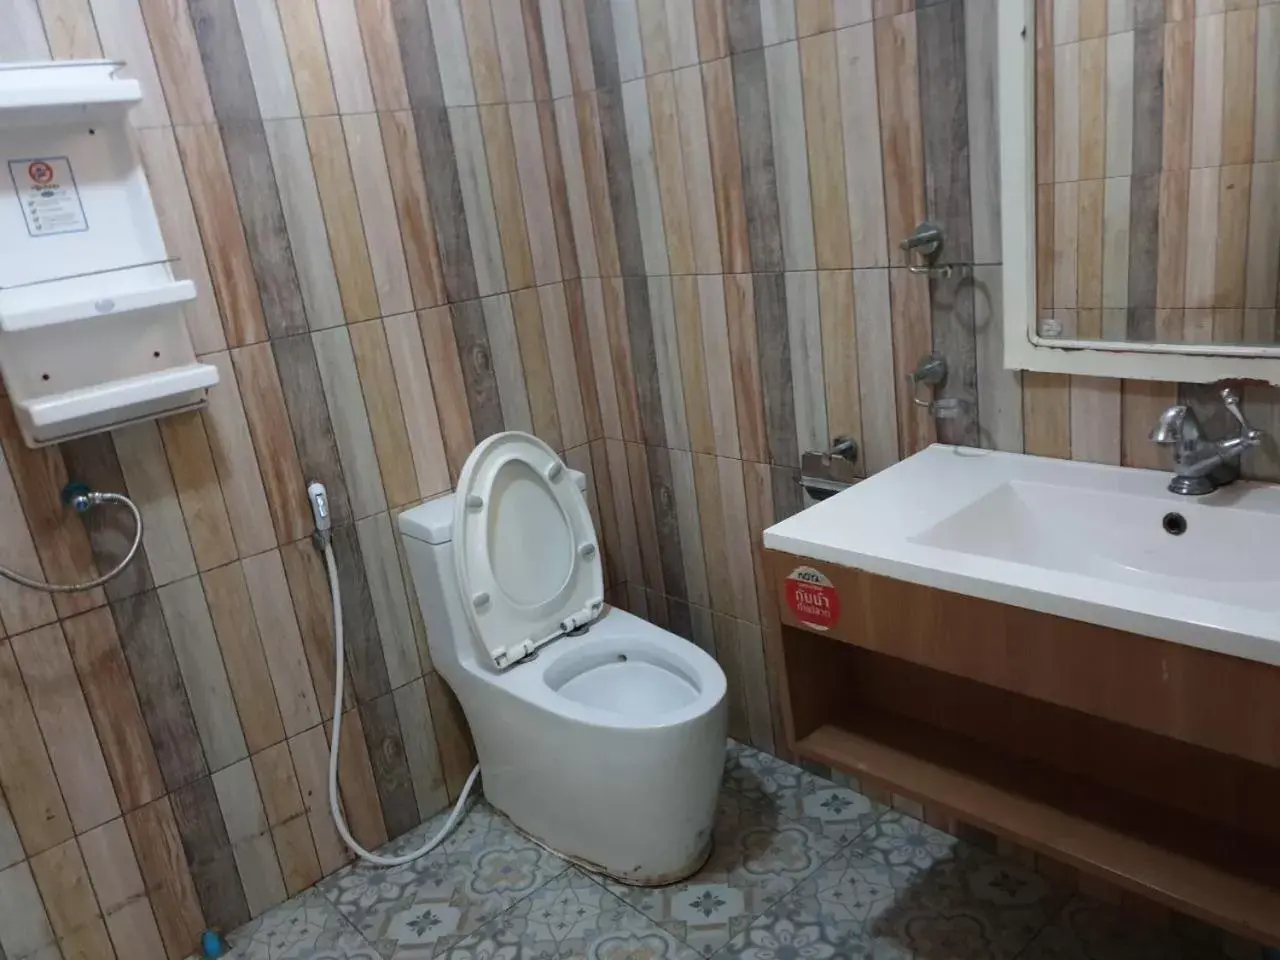 Bathroom in Rayonghouse Resort